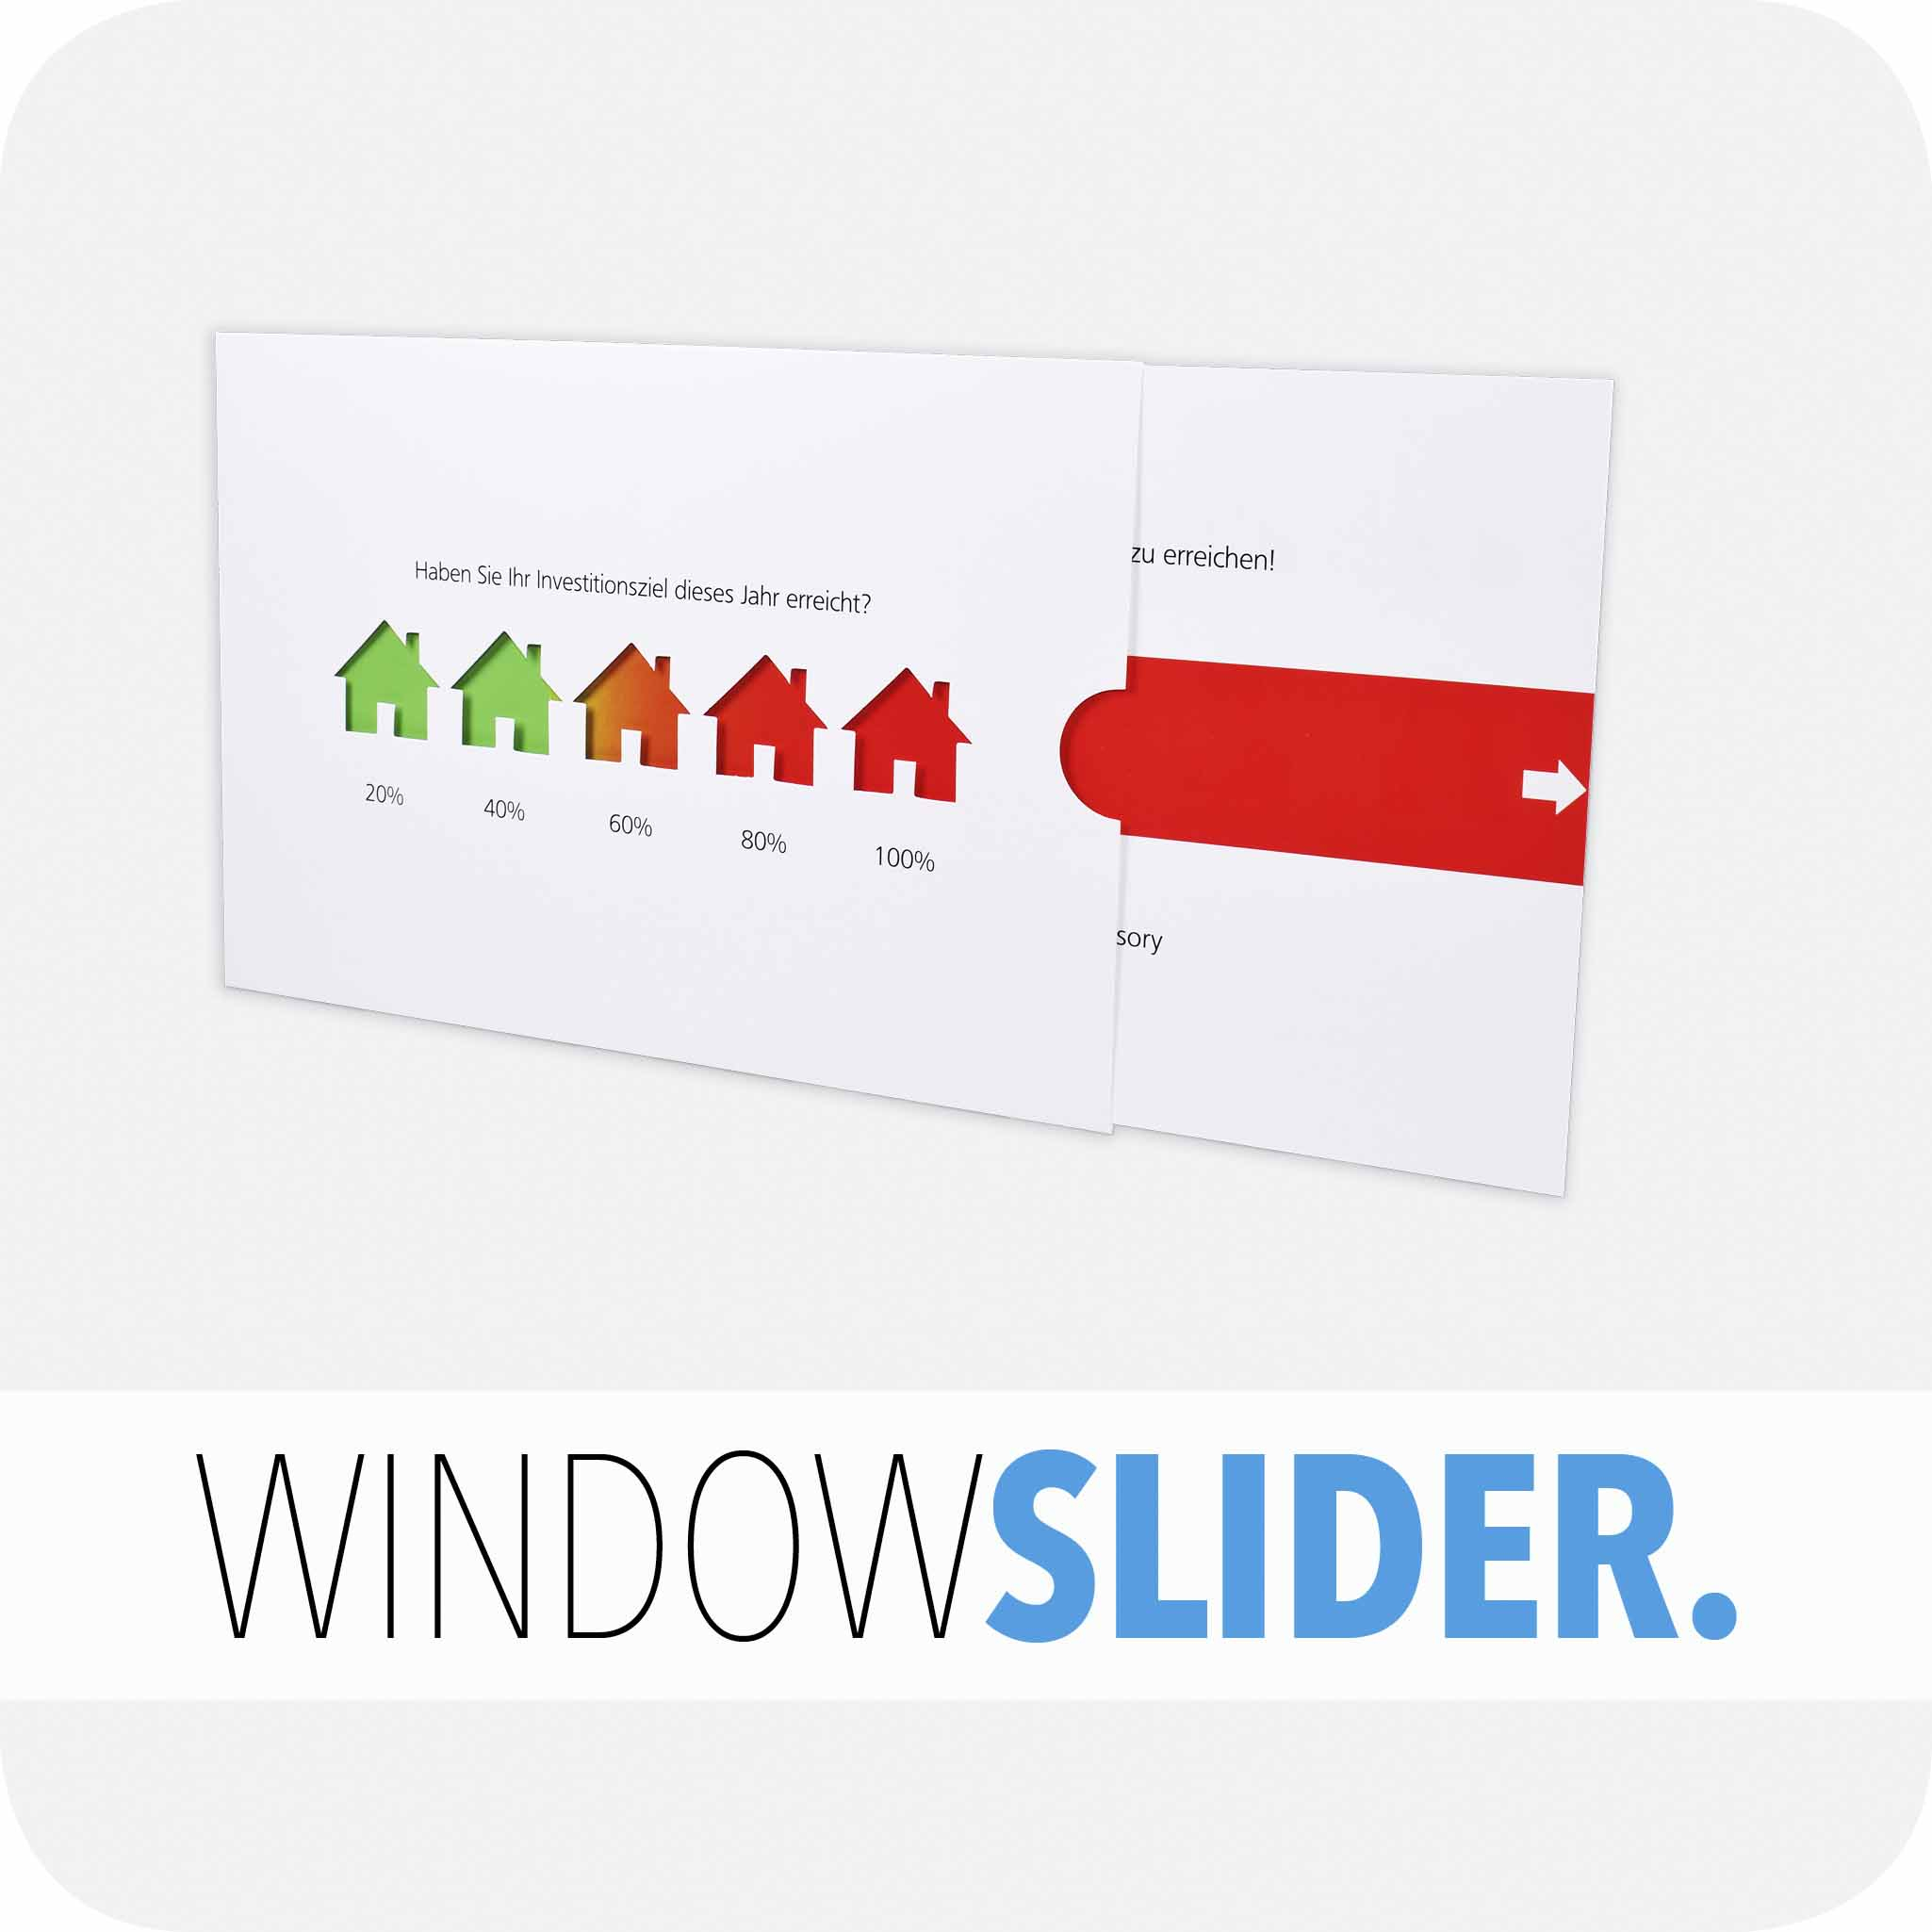 Windowslider